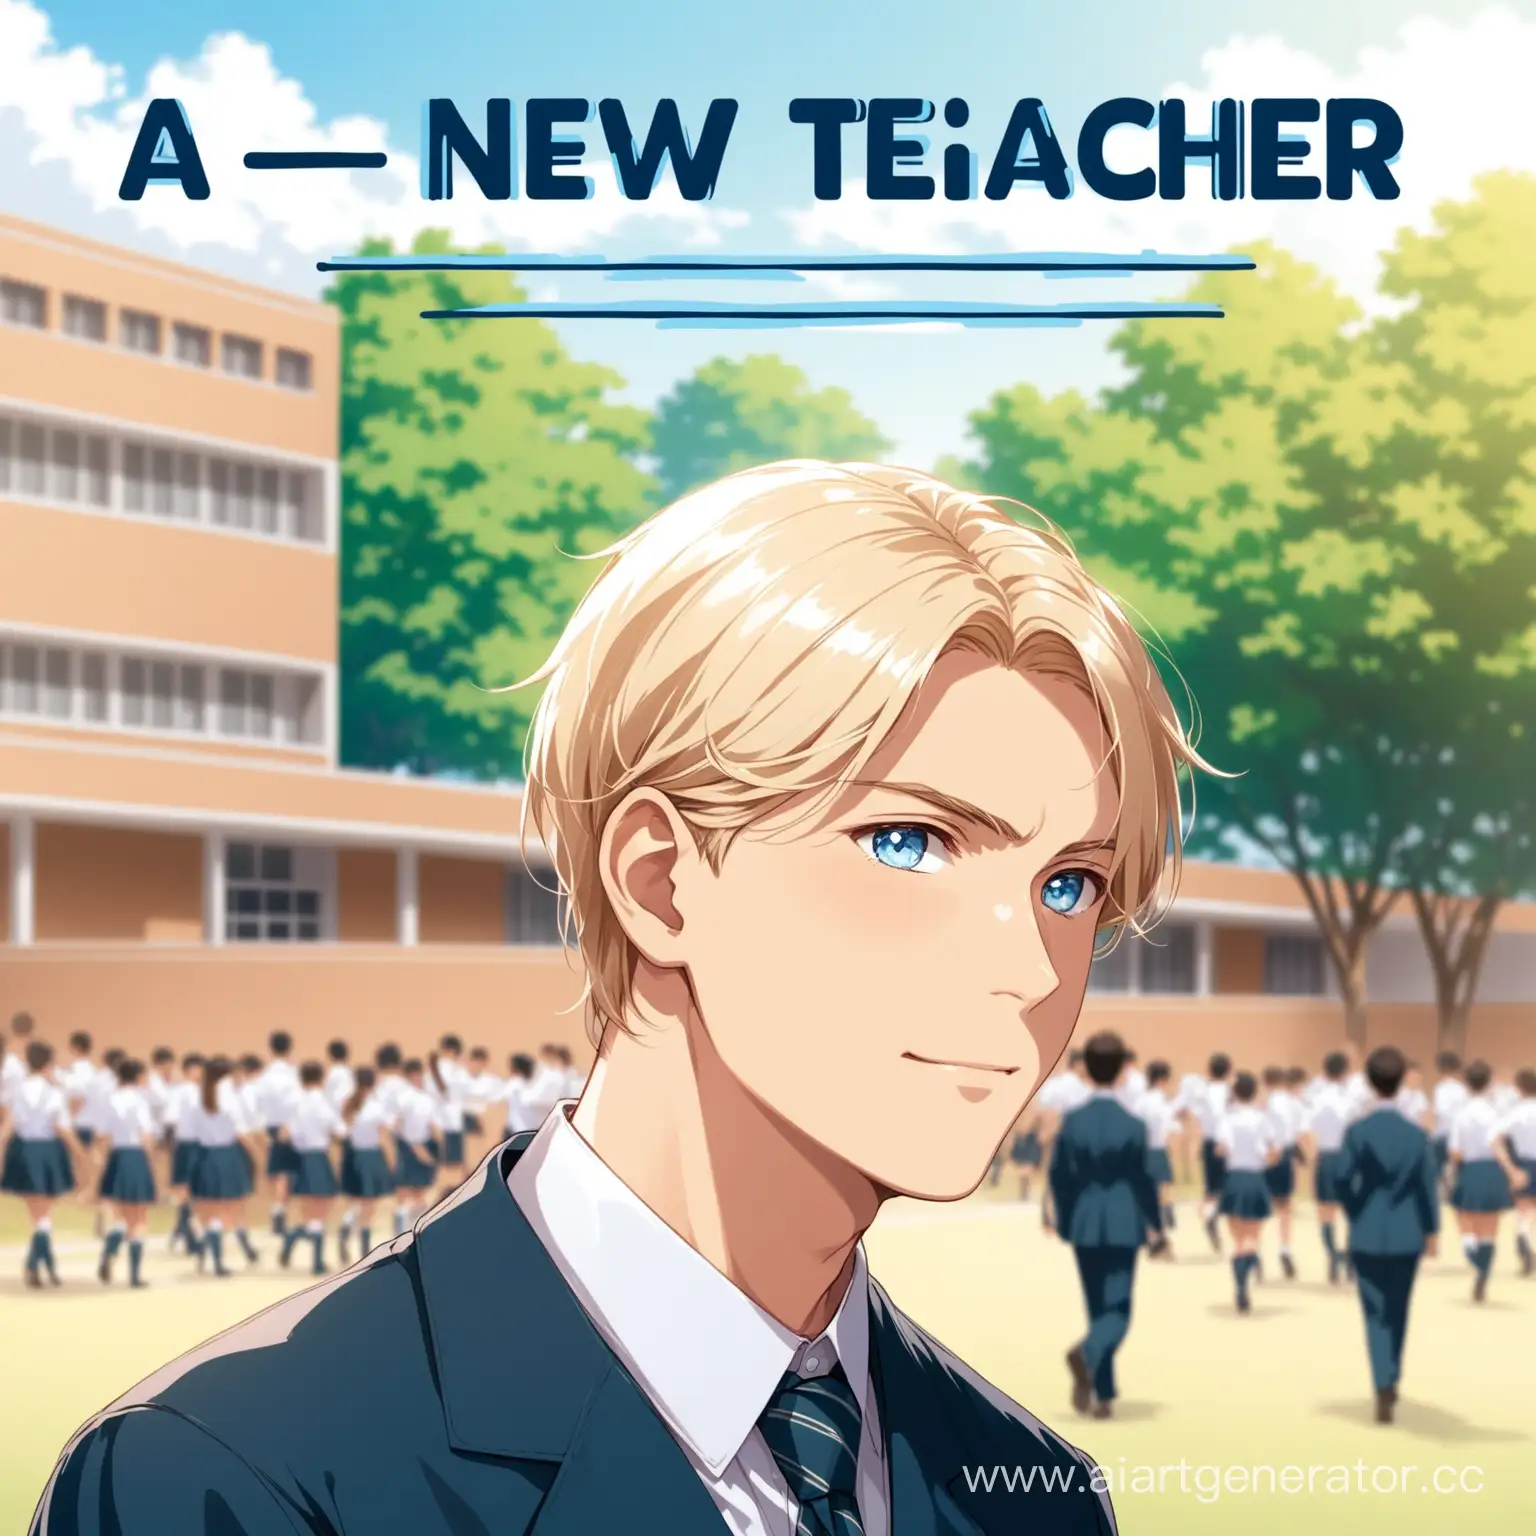 изображение на заднем фоне школа, на переднем плане человек мужского пола светловолосый с голубыми глазами в форме учителя, сверху надпись "a new teacher"